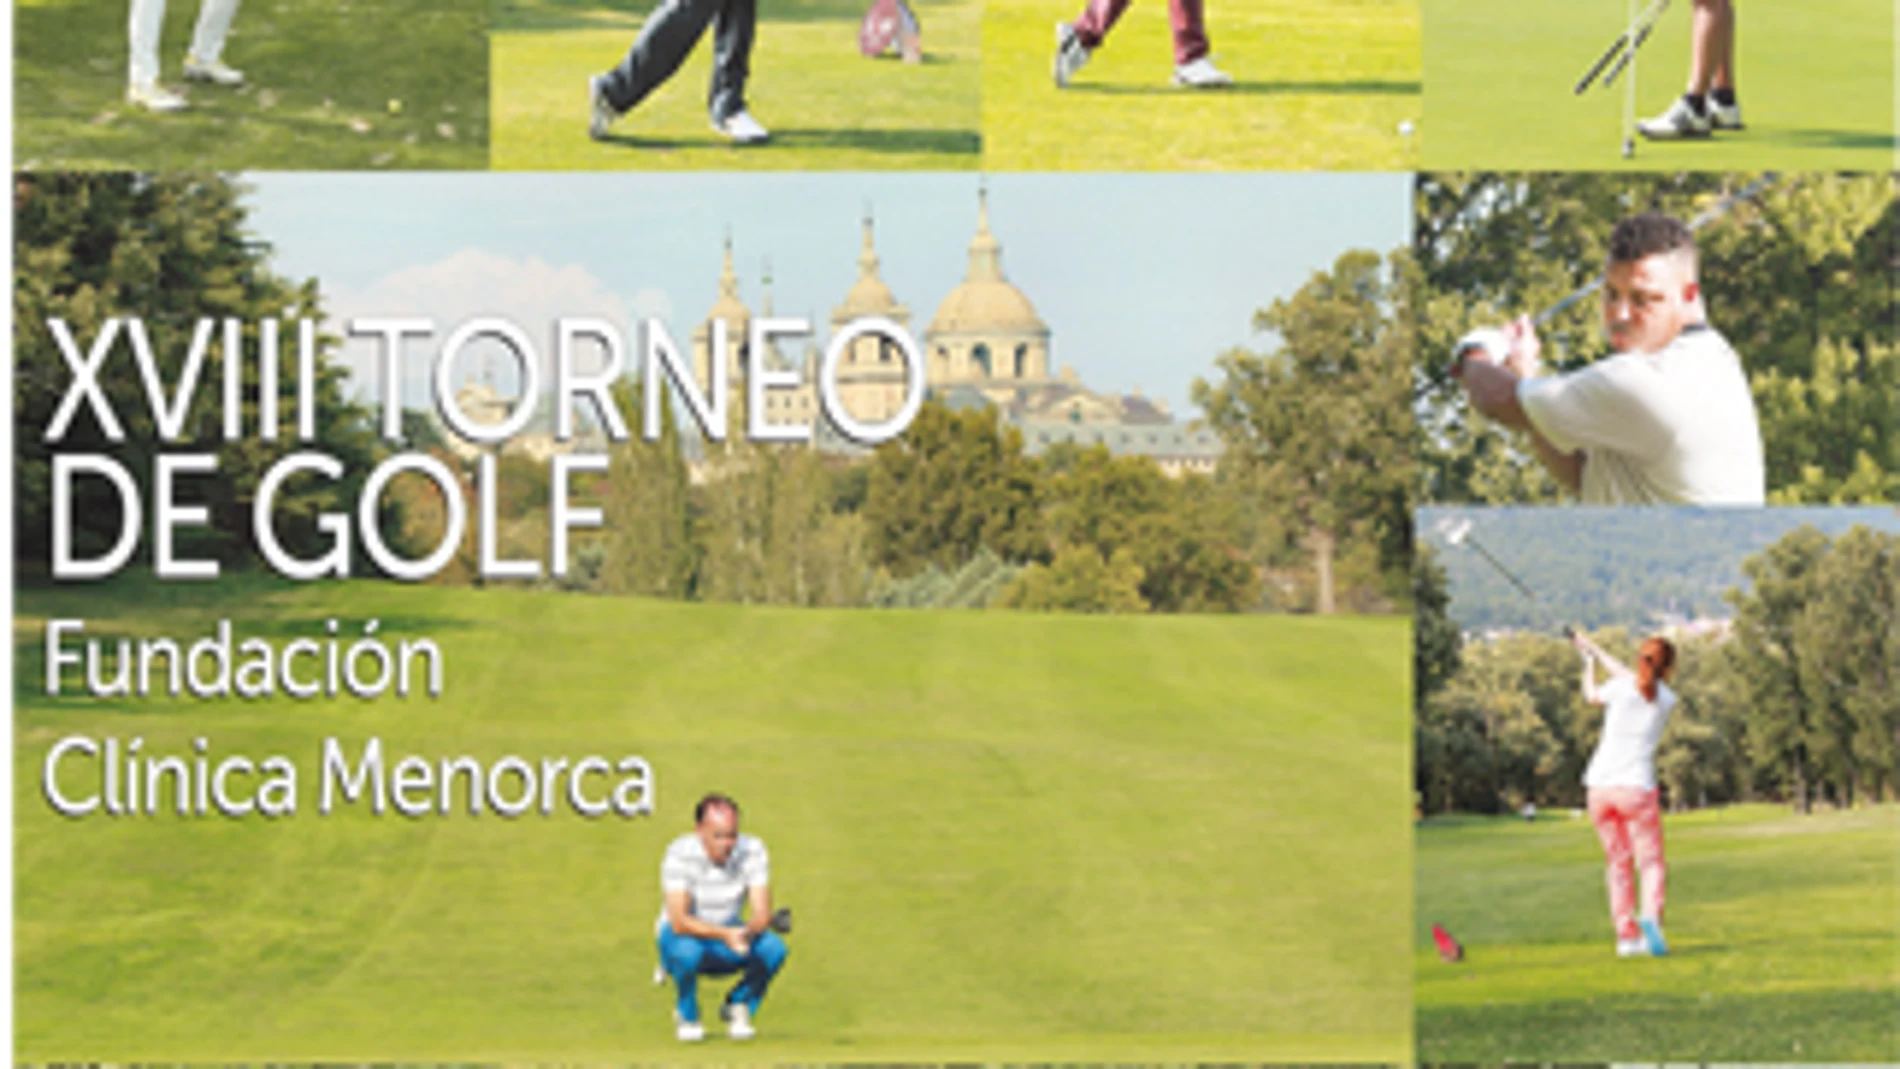 XVIII Torneo de Golf. Fundación Clínica Menorca